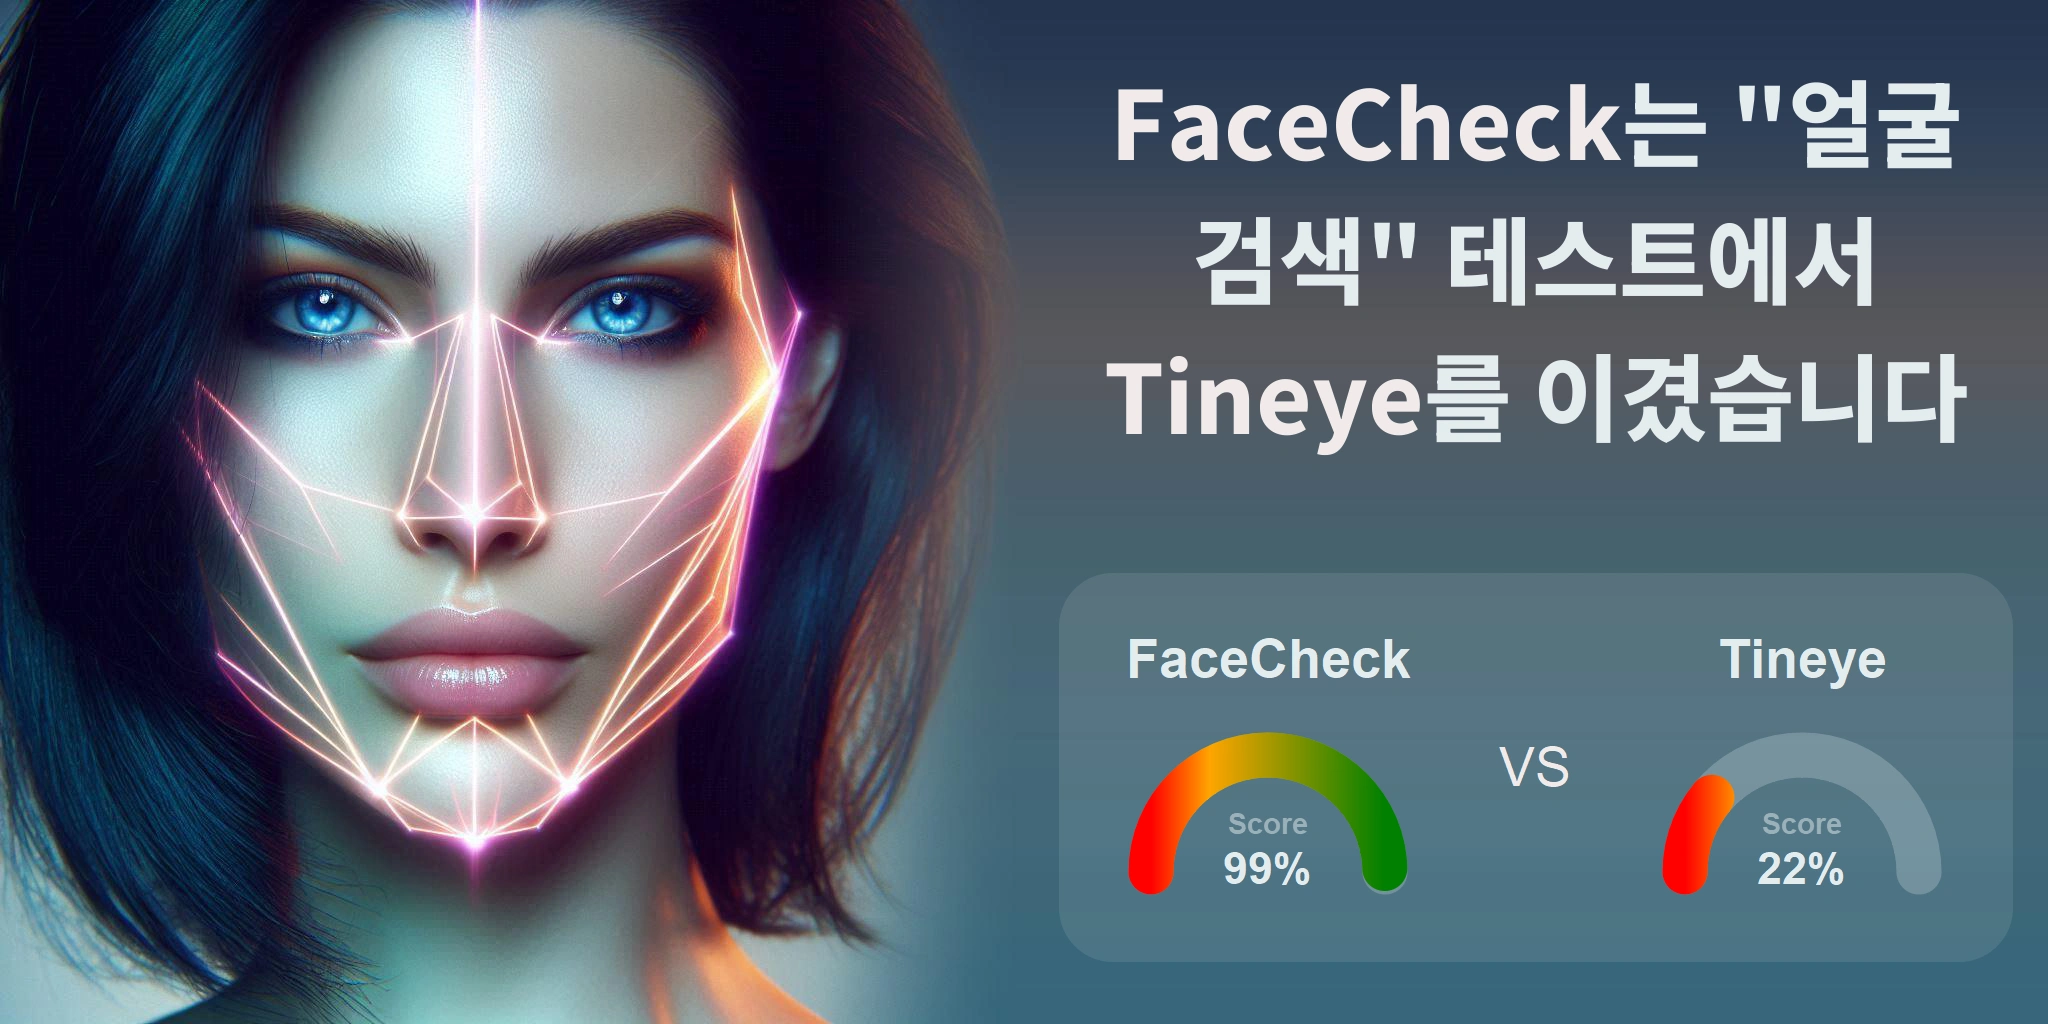 얼굴 검색에 더 좋은 것은 무엇입니까: <br>FaceCheck 또는 Tineye?